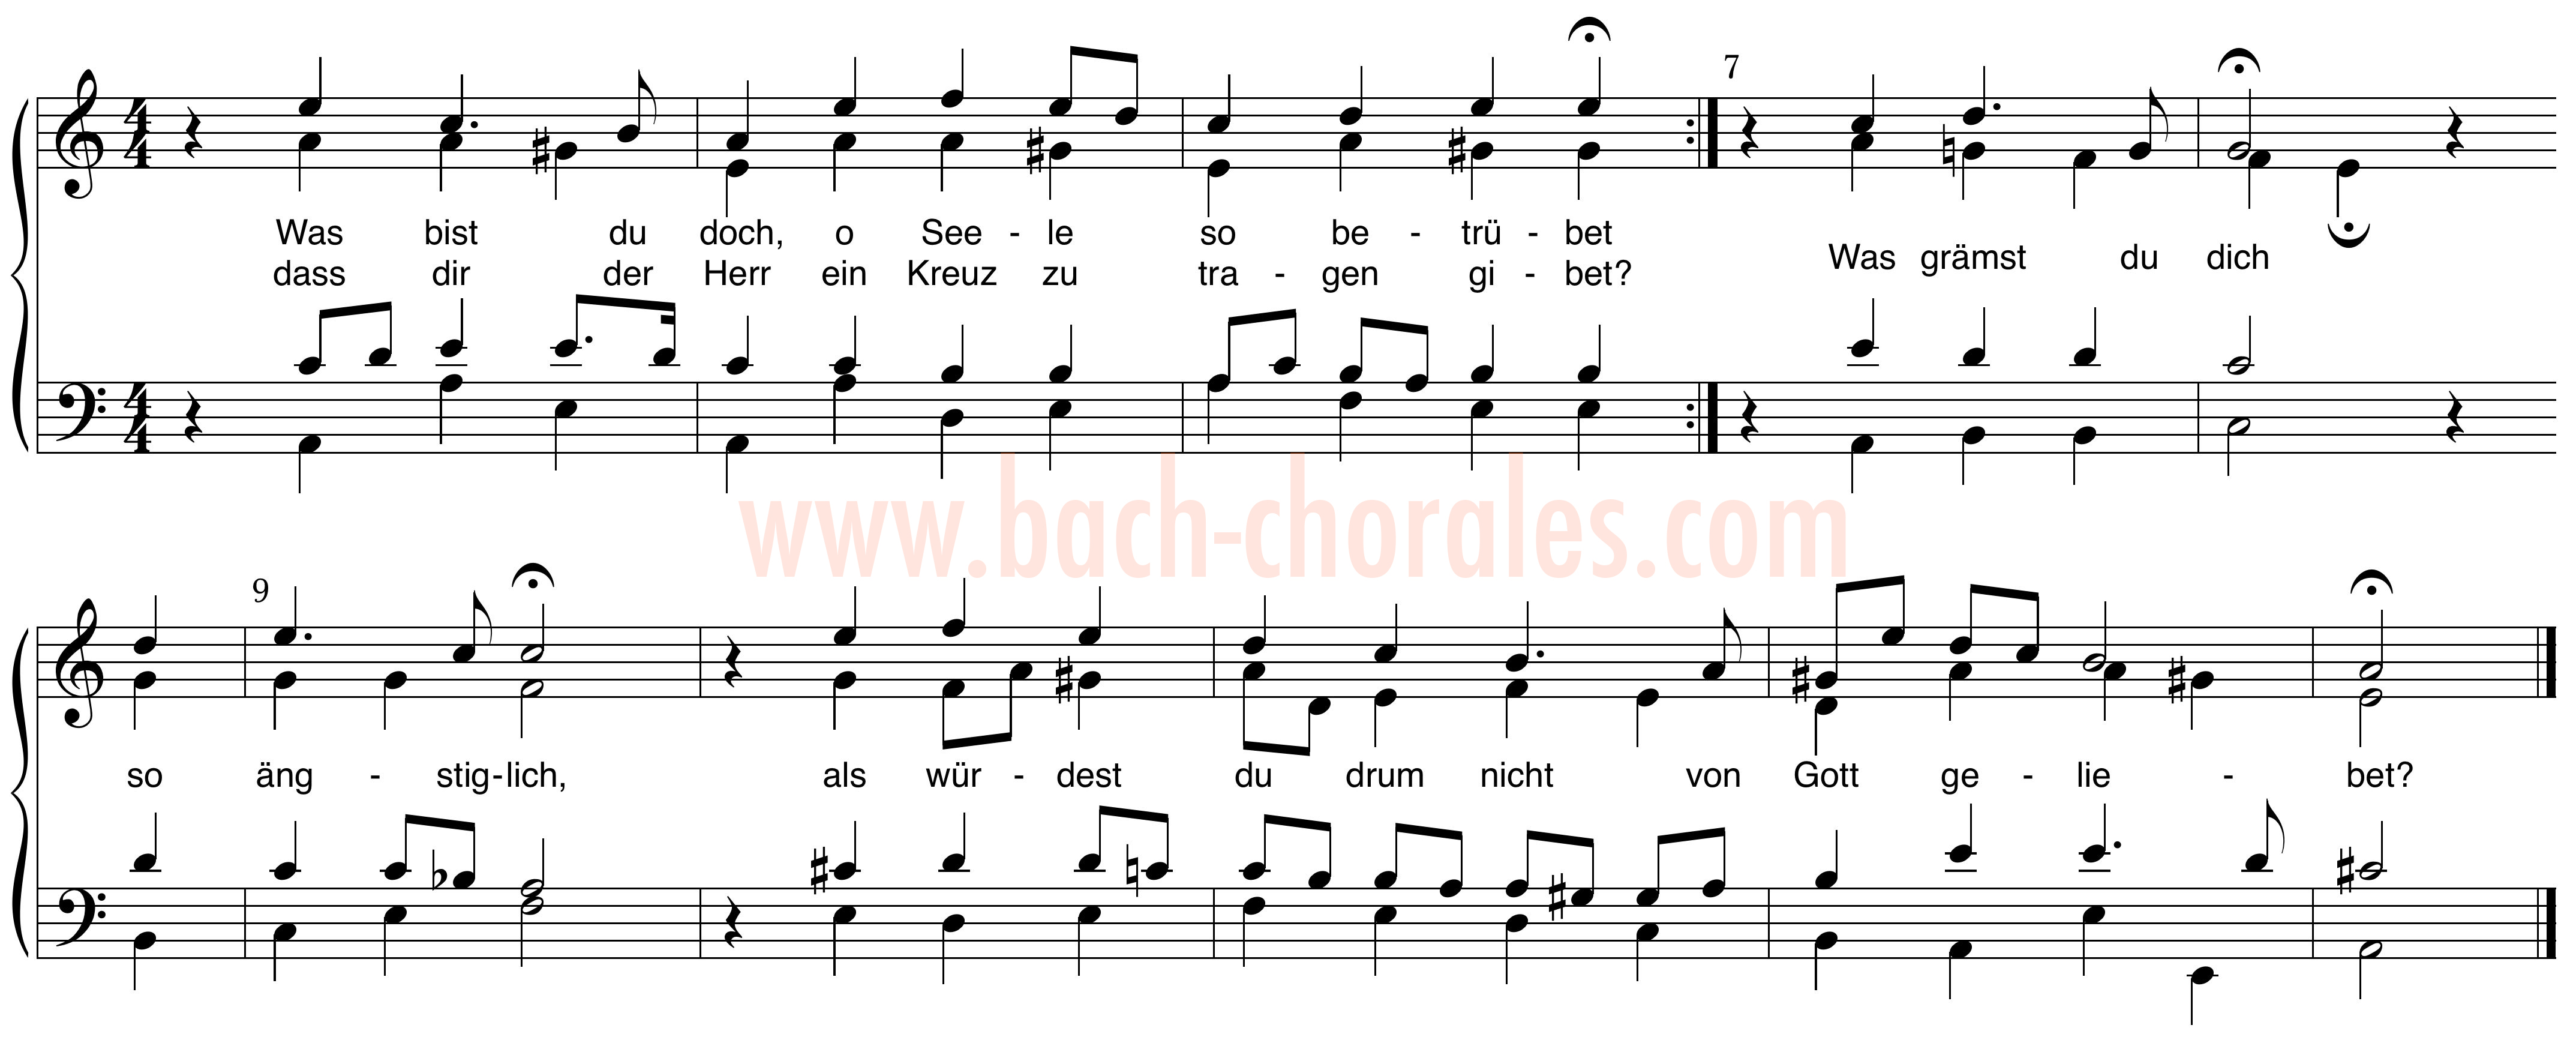 notenbeeld BWV 424 op https://www.bach-chorales.com/